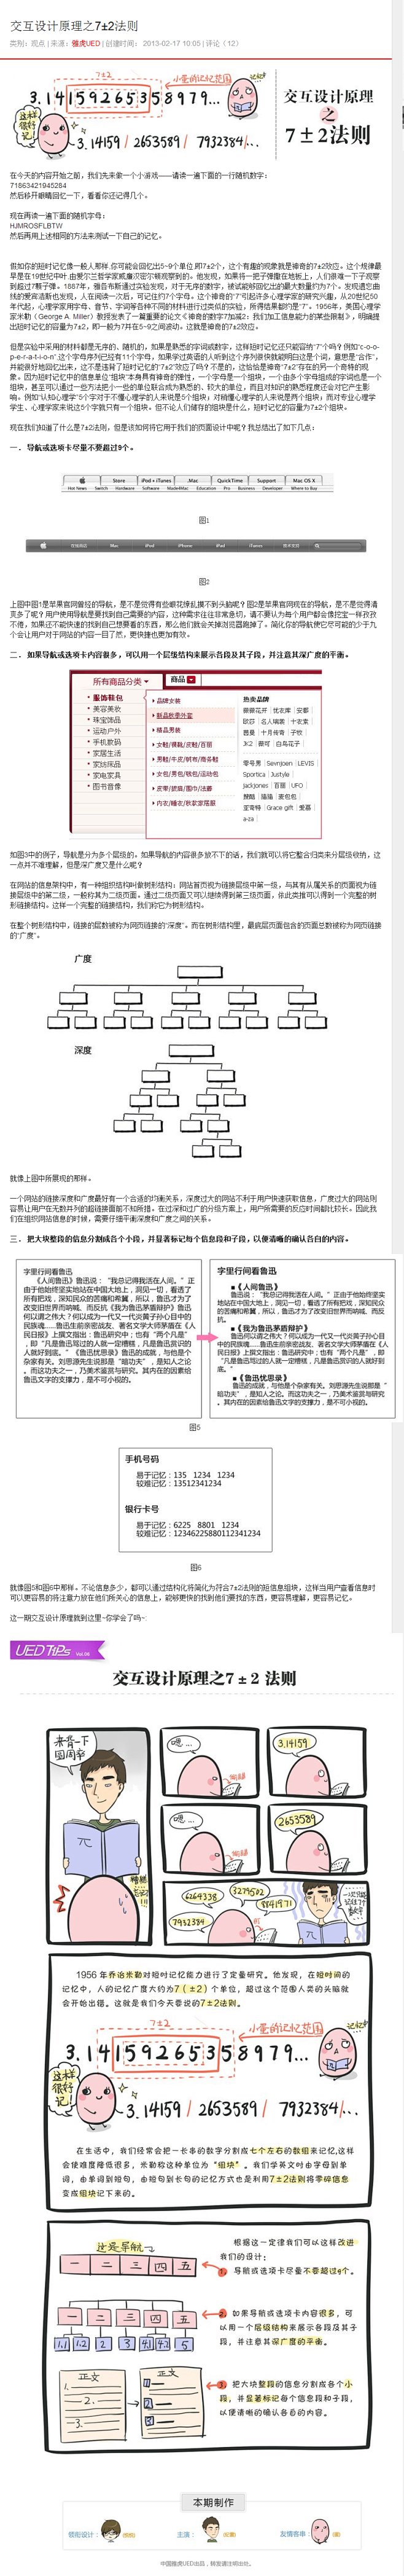 交互设计原理之7±2法则 | 视觉中国